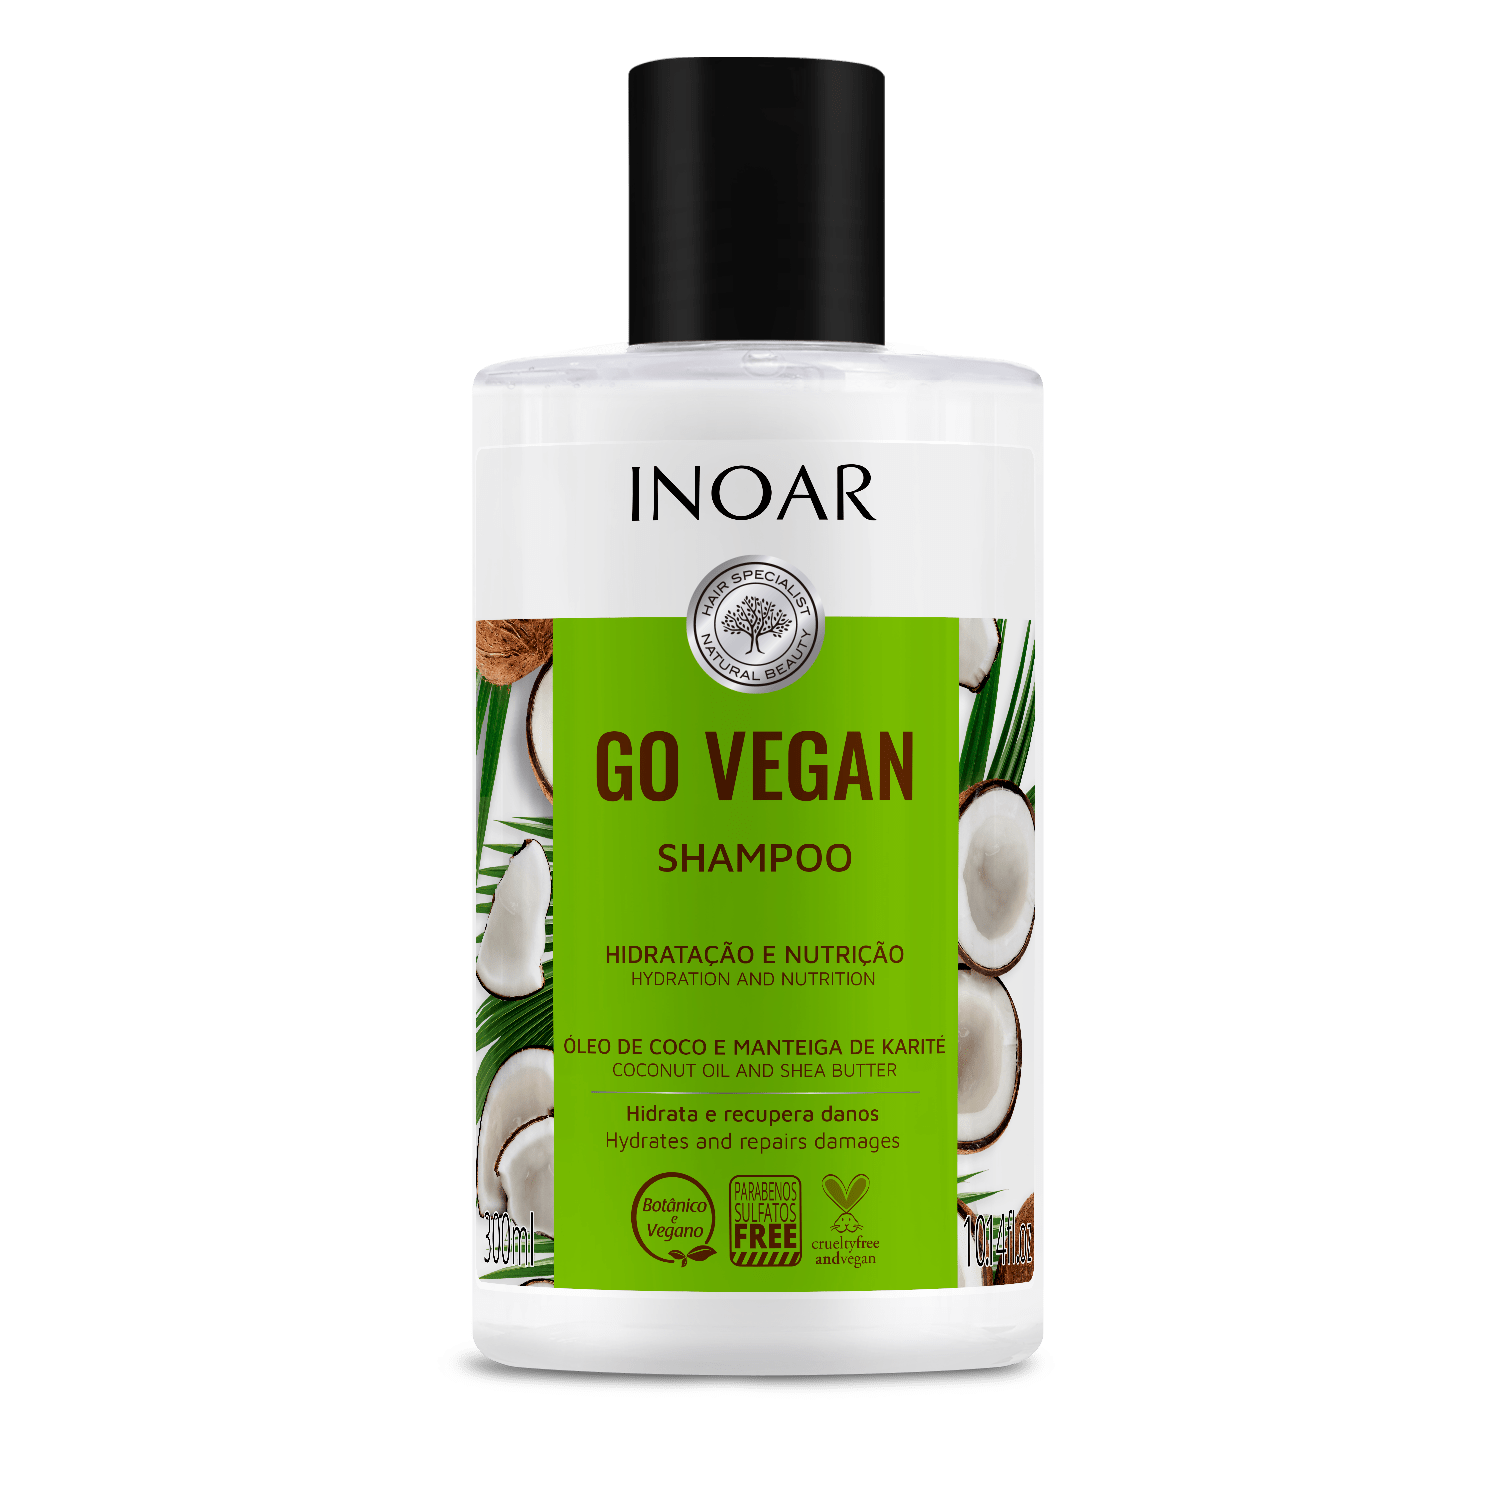 inoar go vegan shampoo hydratacao